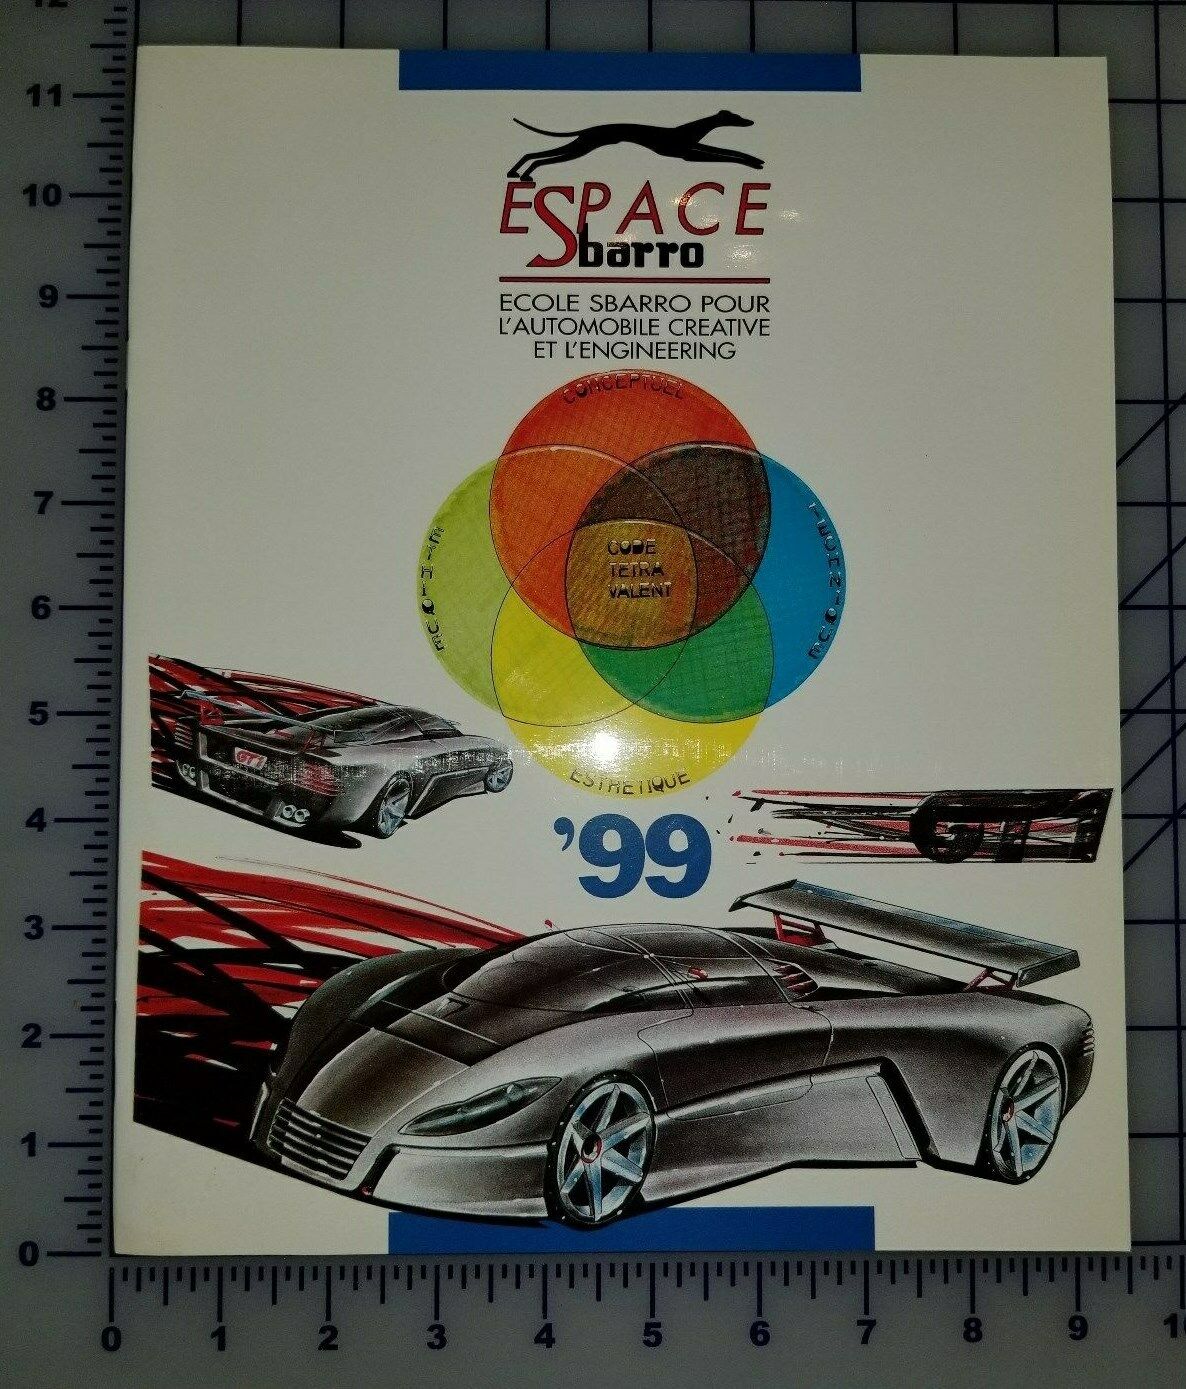 1999 Espace Sbarro GT1 Concept Auto & Design Brochure